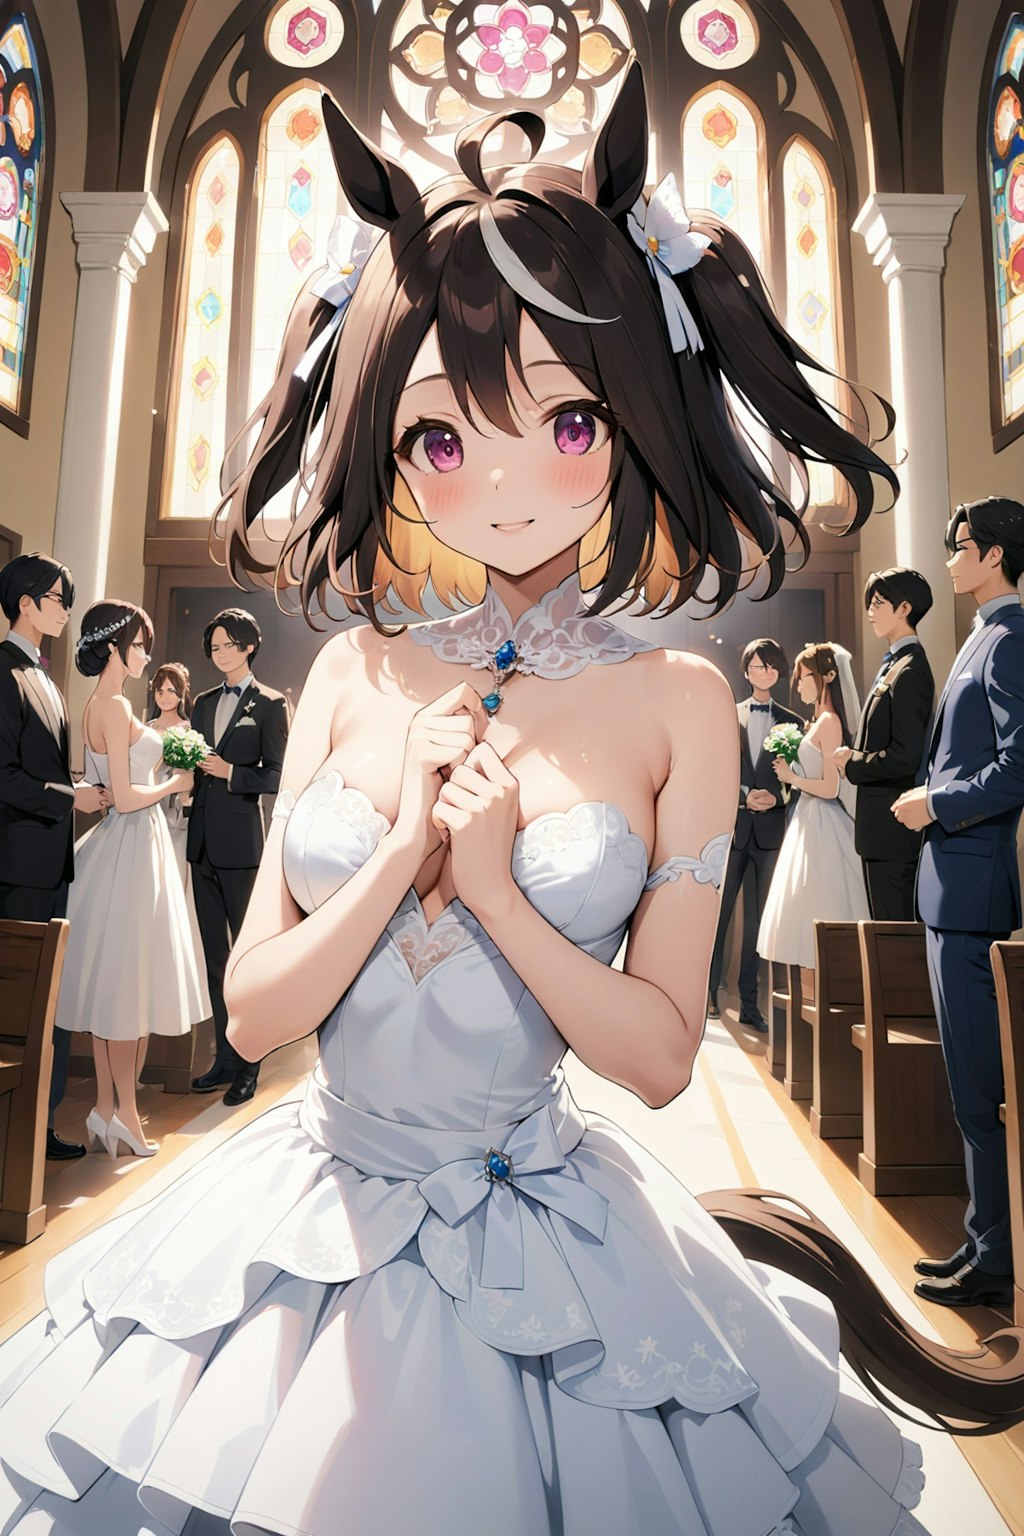 〜Umamusume Wedding Story Ⅱ 〜